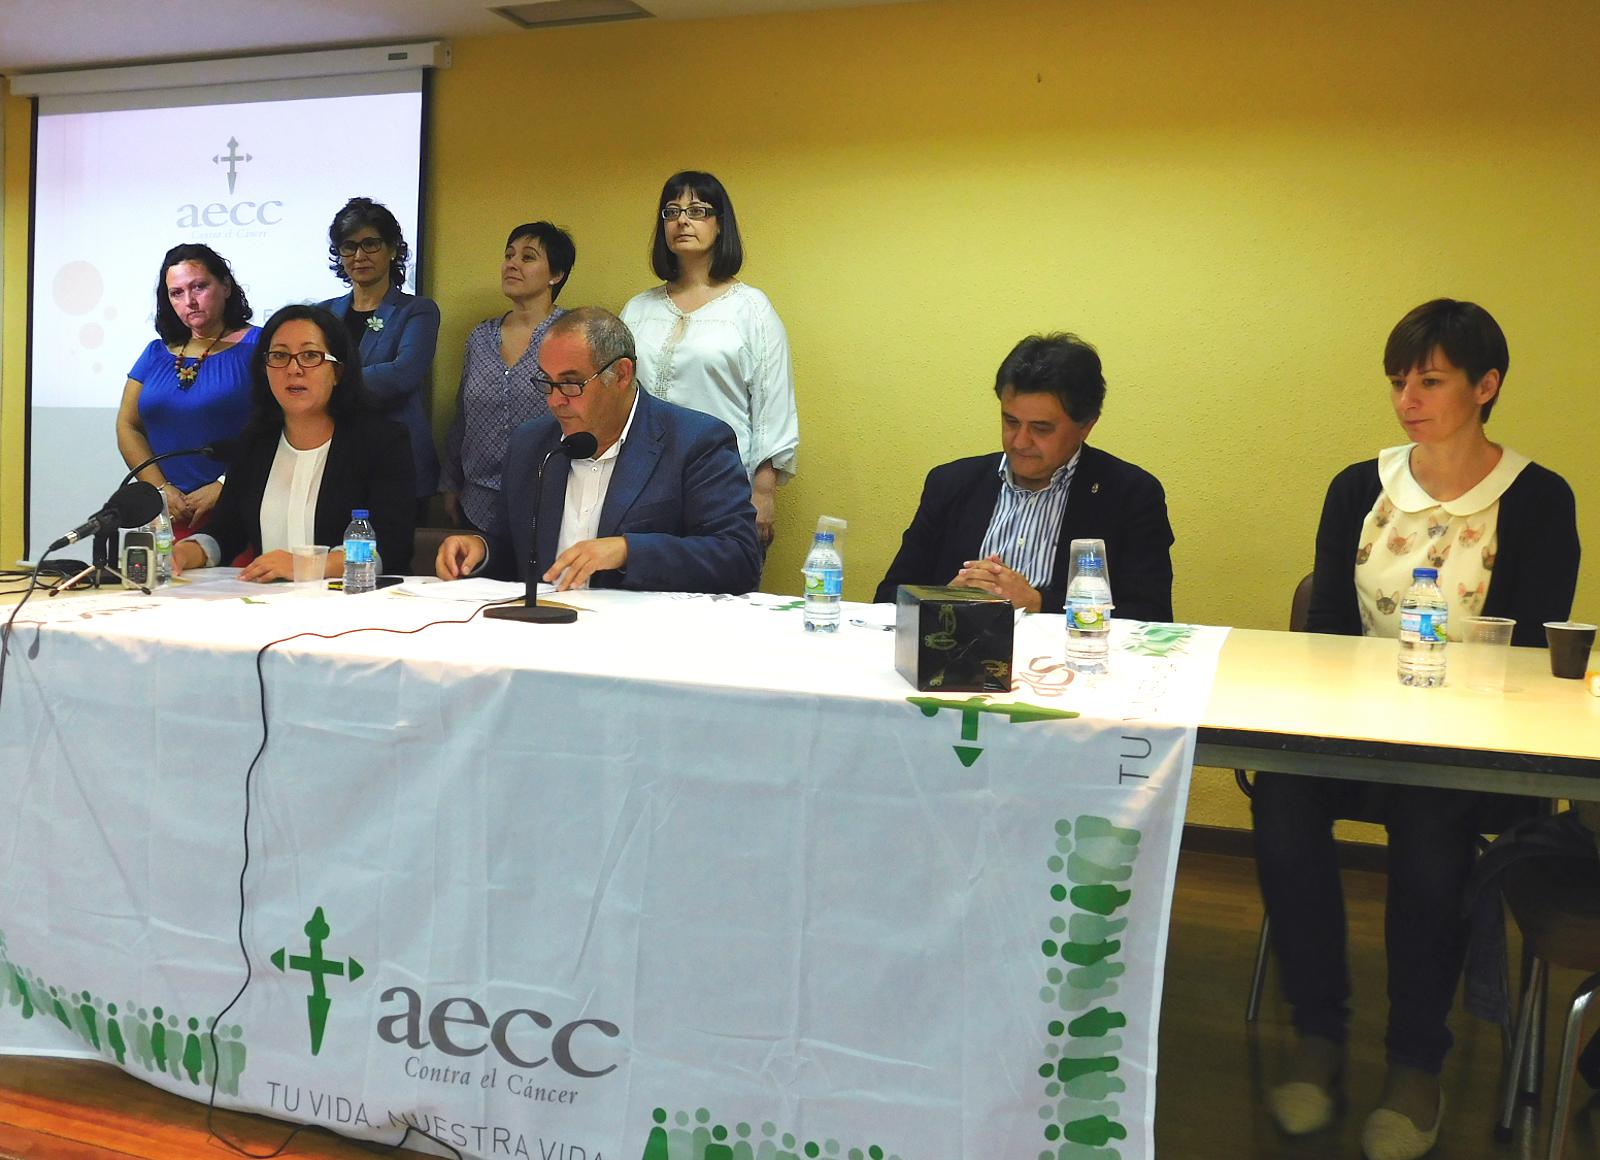 La Junta Local de la AECC recibe 3.356 euros del beneficio del II Open Raid Baena Cultura